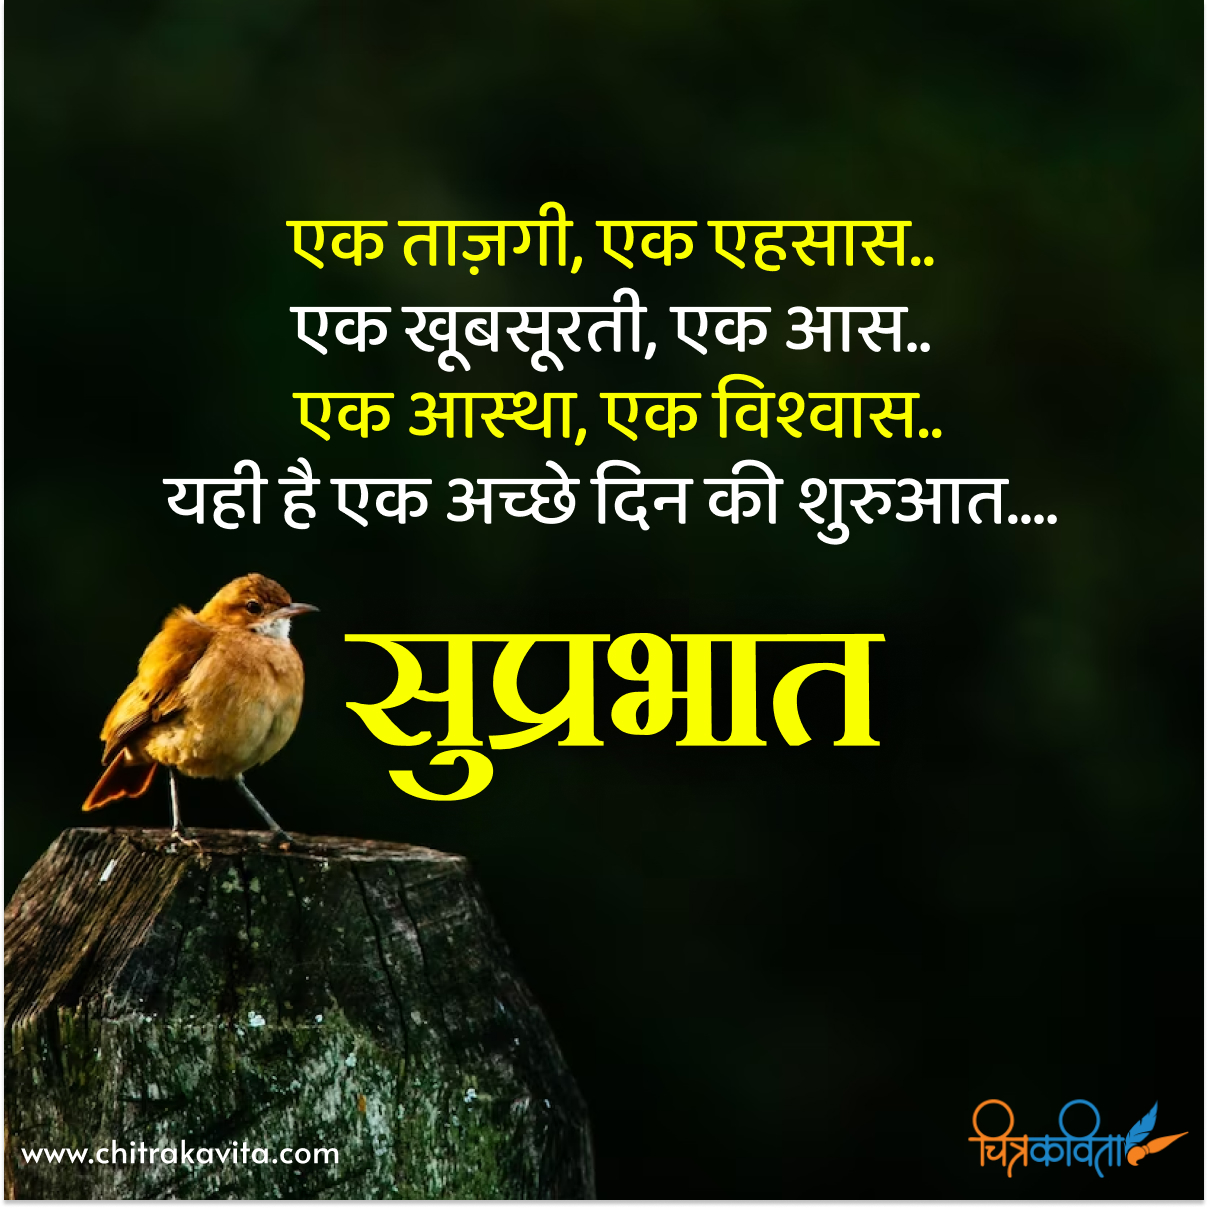 hindi good morning status, hindi quotes, good morning in hindi, astha, good morning quotes